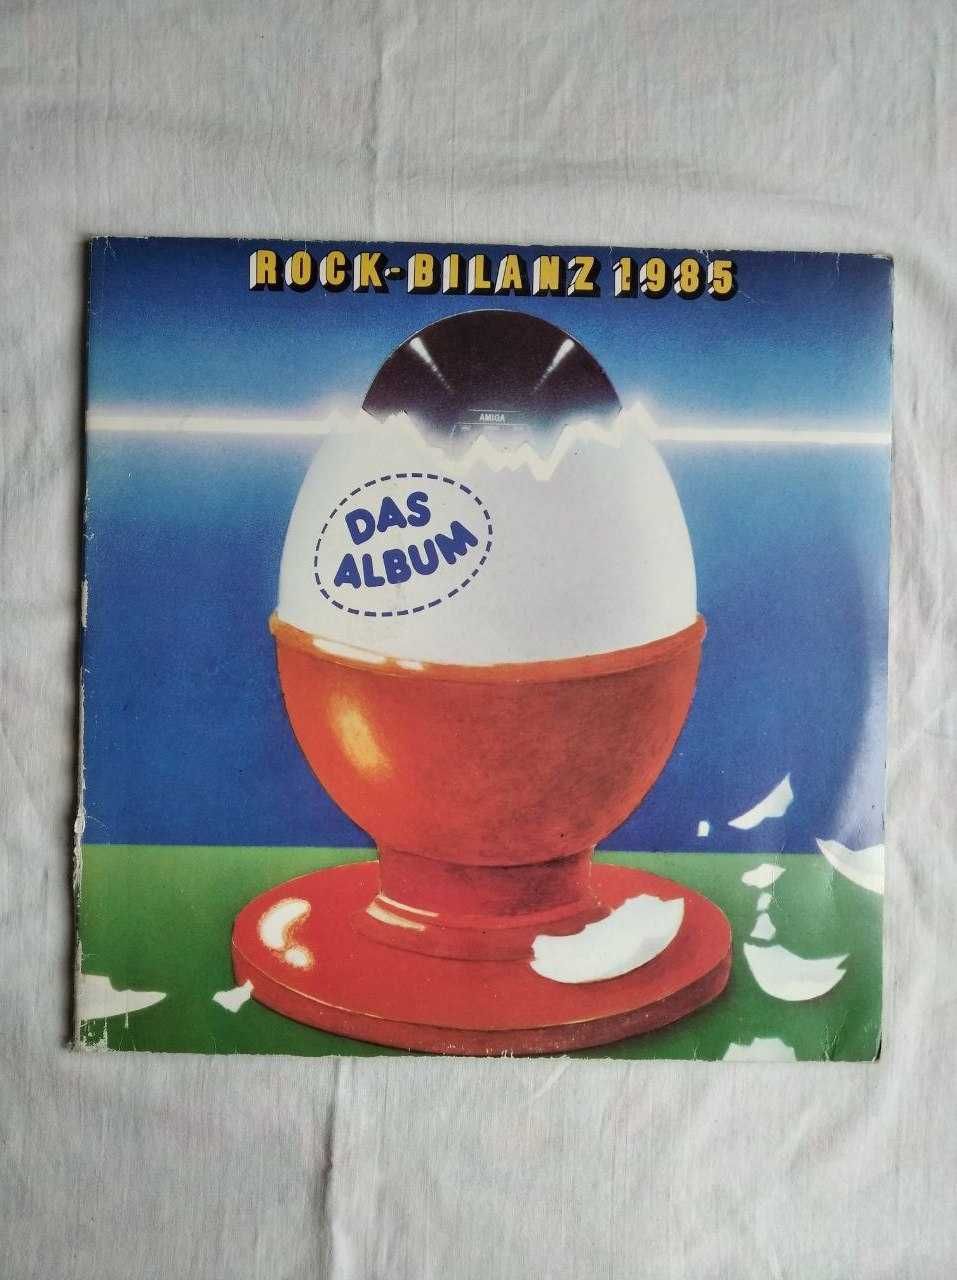 Rock-bilanz 1985 набор из двух пластинок